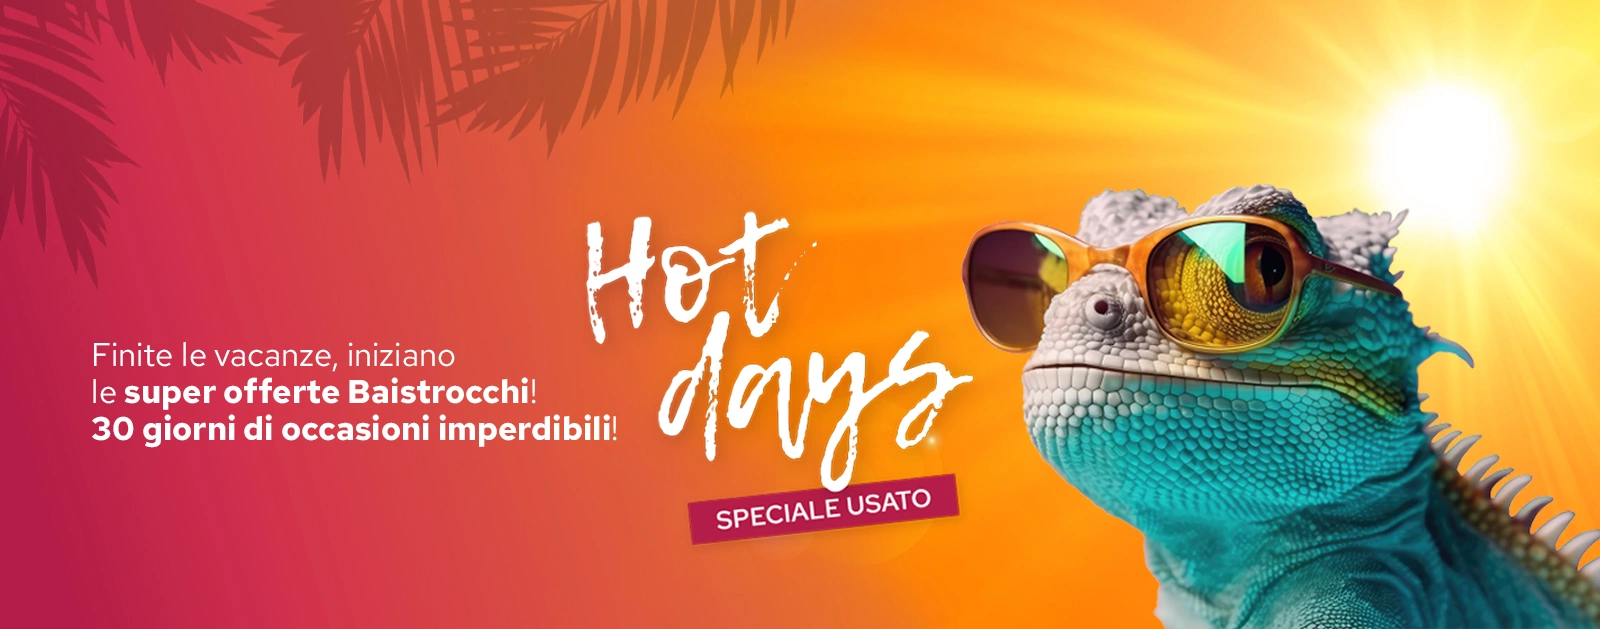 Hot-Days Baistrocchi